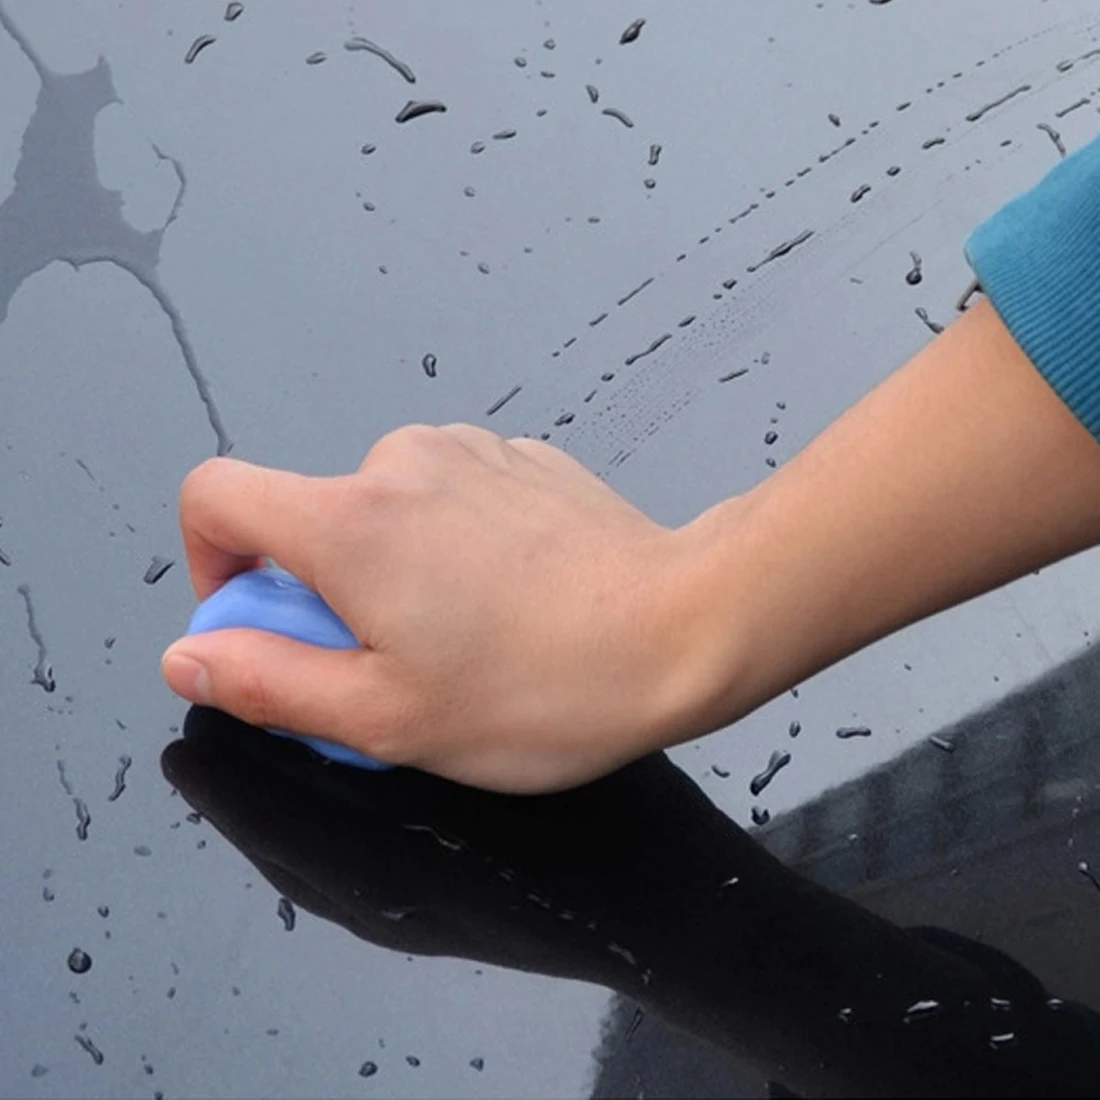 Бу-бауты 2018 Новый 1 предмет Автомойка грязи, чтобы осадка Пластилин для удаления пыли fly краска красоты техническое обслуживание автомобиля